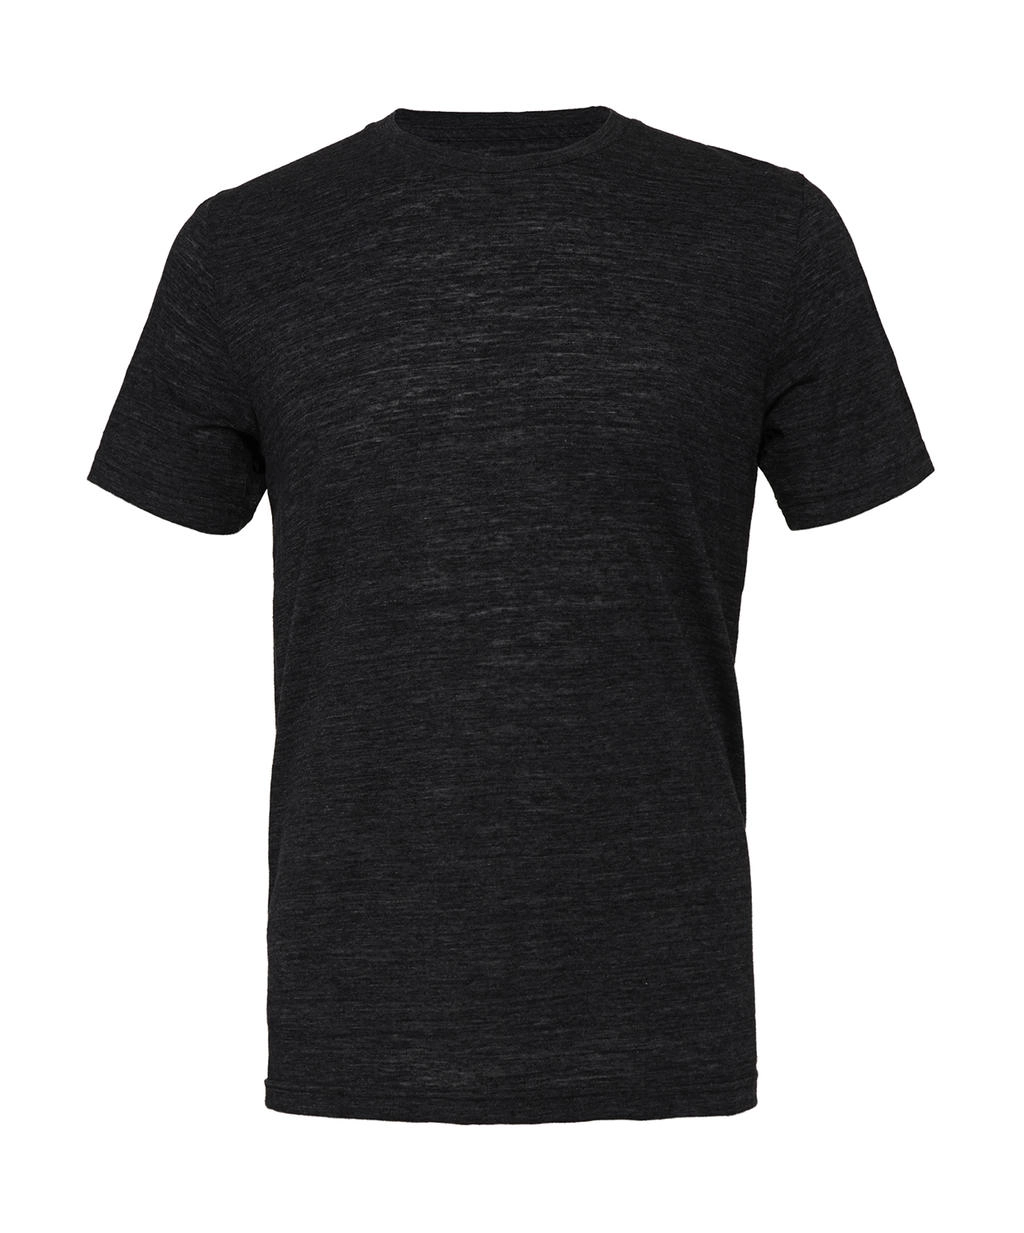 Unisex Poly-Cotton T-Shirt zum Besticken und Bedrucken in der Farbe Black Marble mit Ihren Logo, Schriftzug oder Motiv.